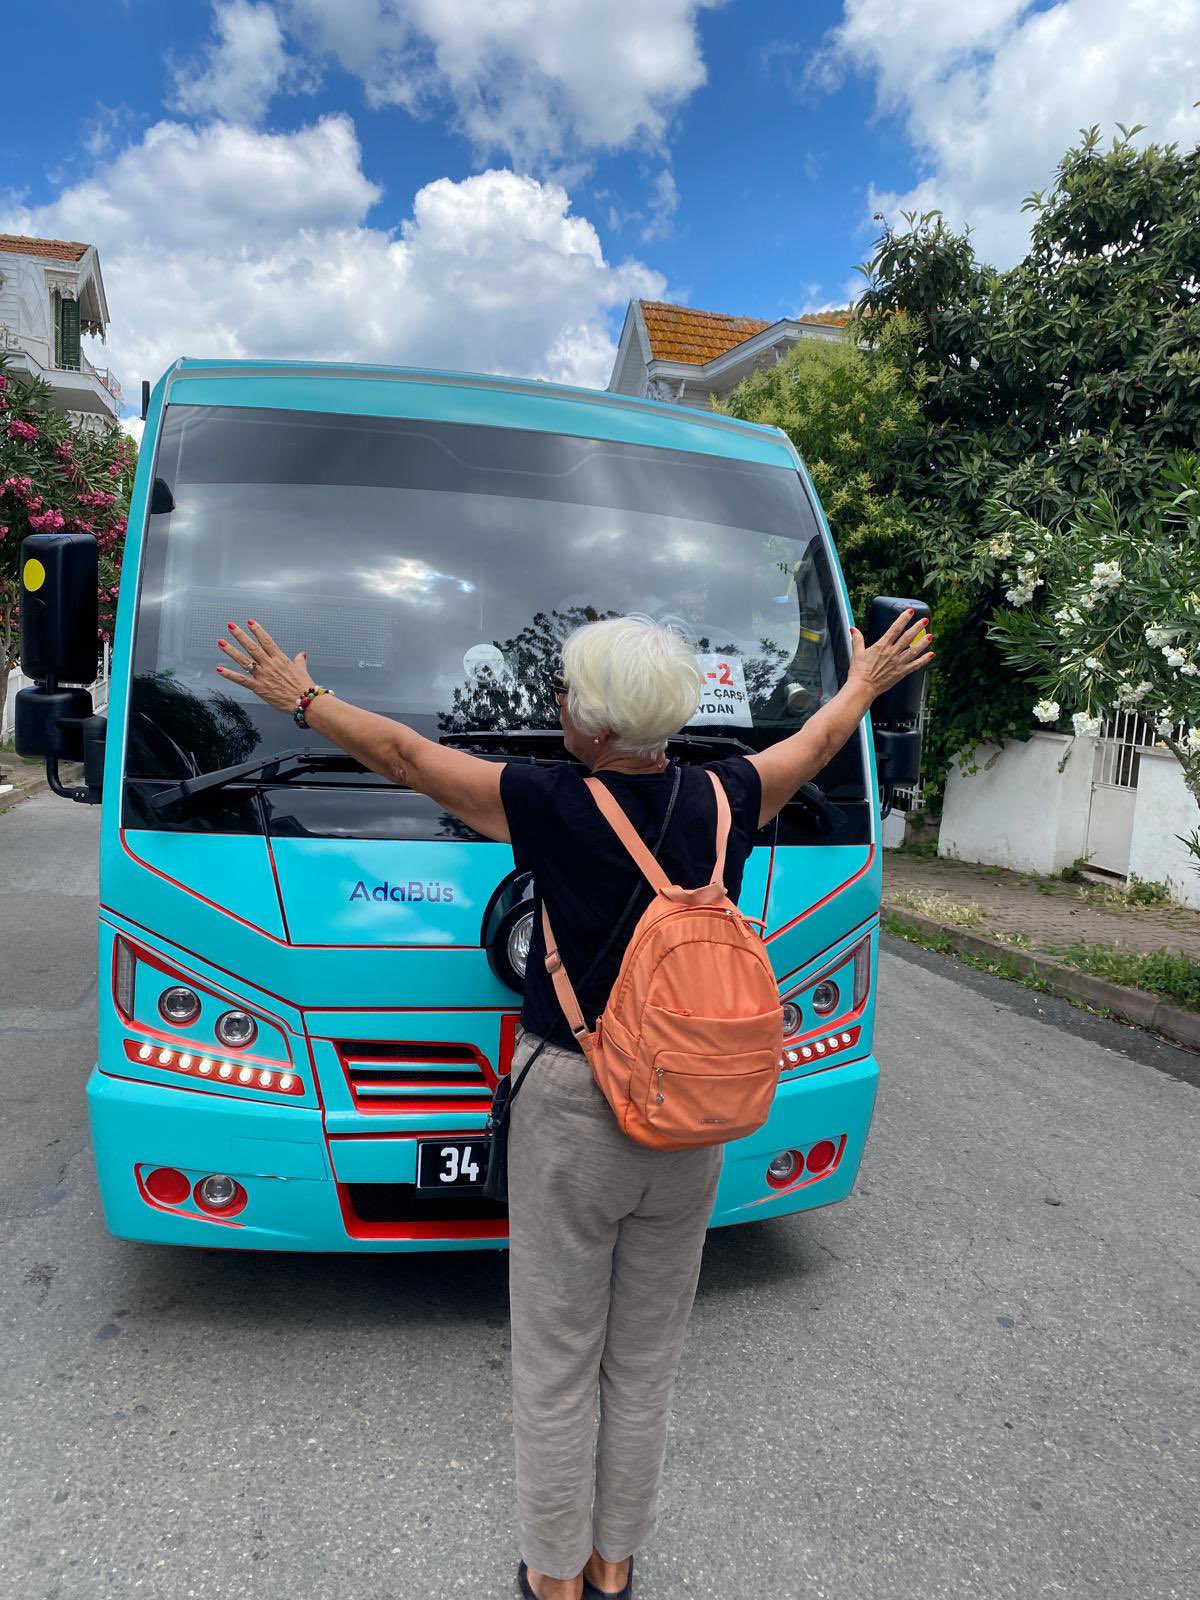 Adalar'a minibüs getirilmesini protesto edenler serbest bırakıldı